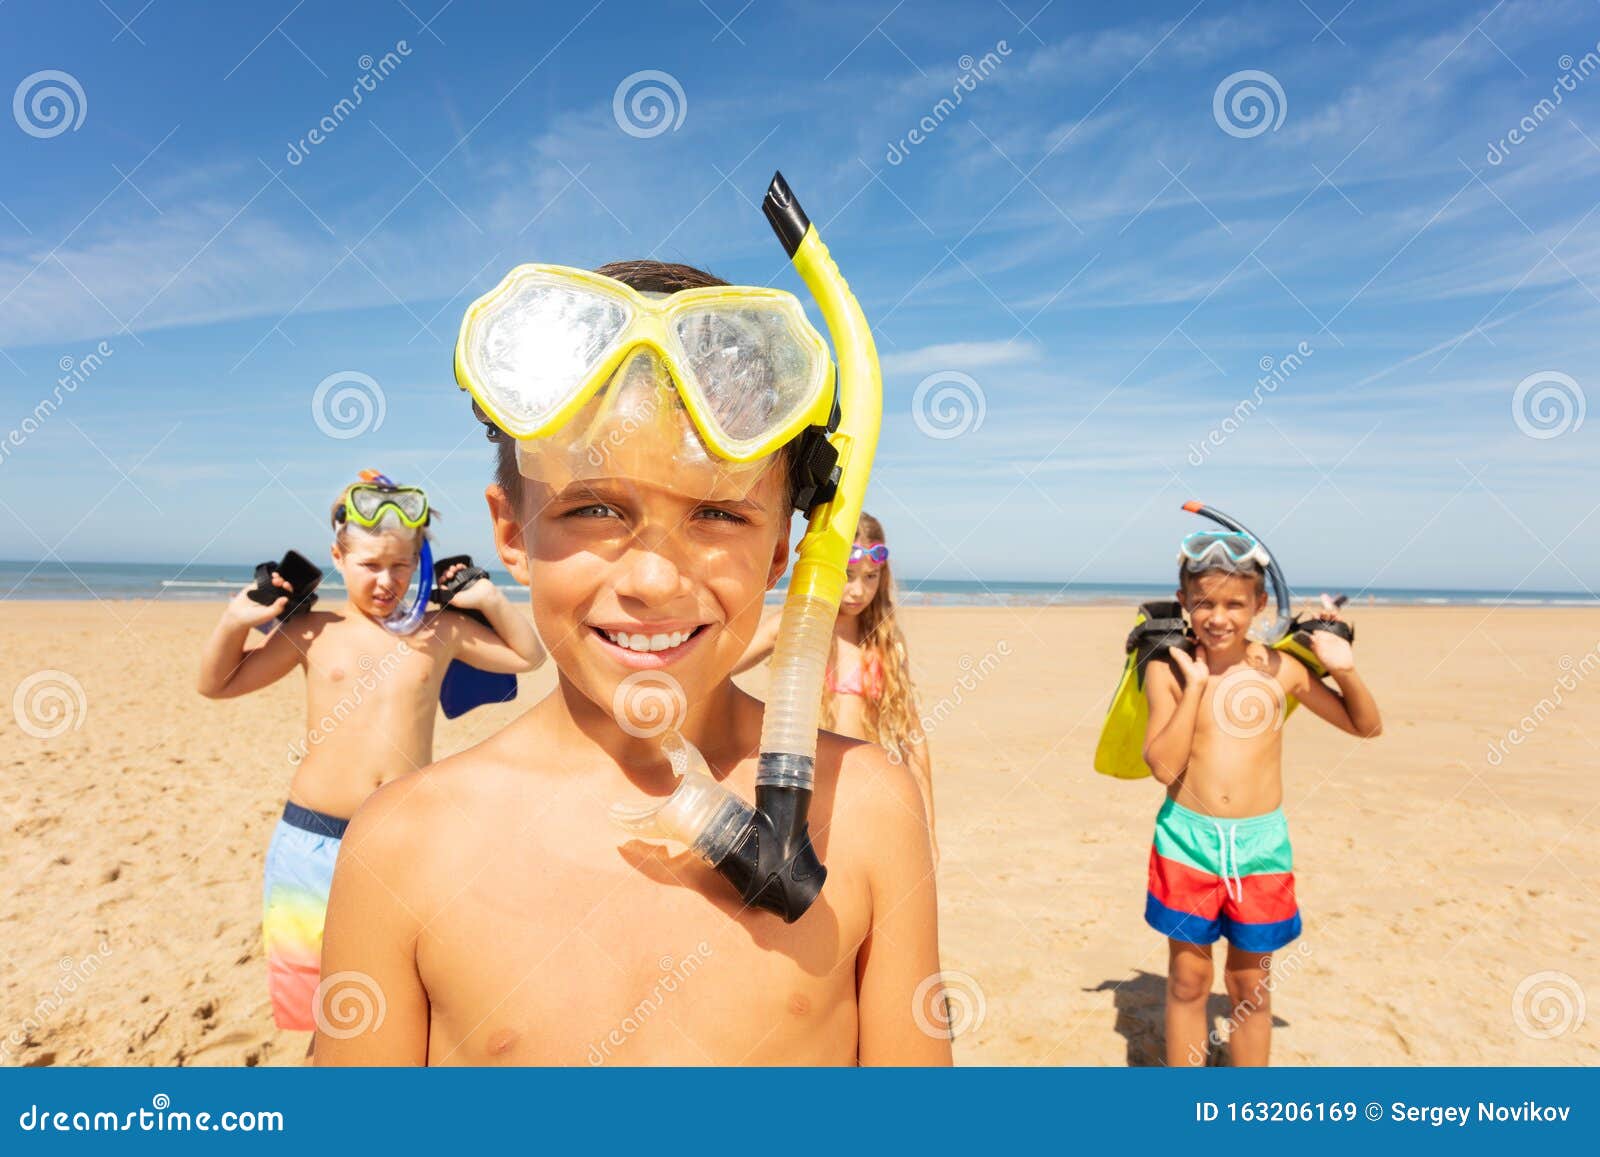 Un ragazzo mascherato, un gruppo di amici sulla spiaggia. Ritratto di un ragazzo carino in un gruppo di bambini in piedi con una mascherina da snorkeling sulla spiaggia vicino al mare